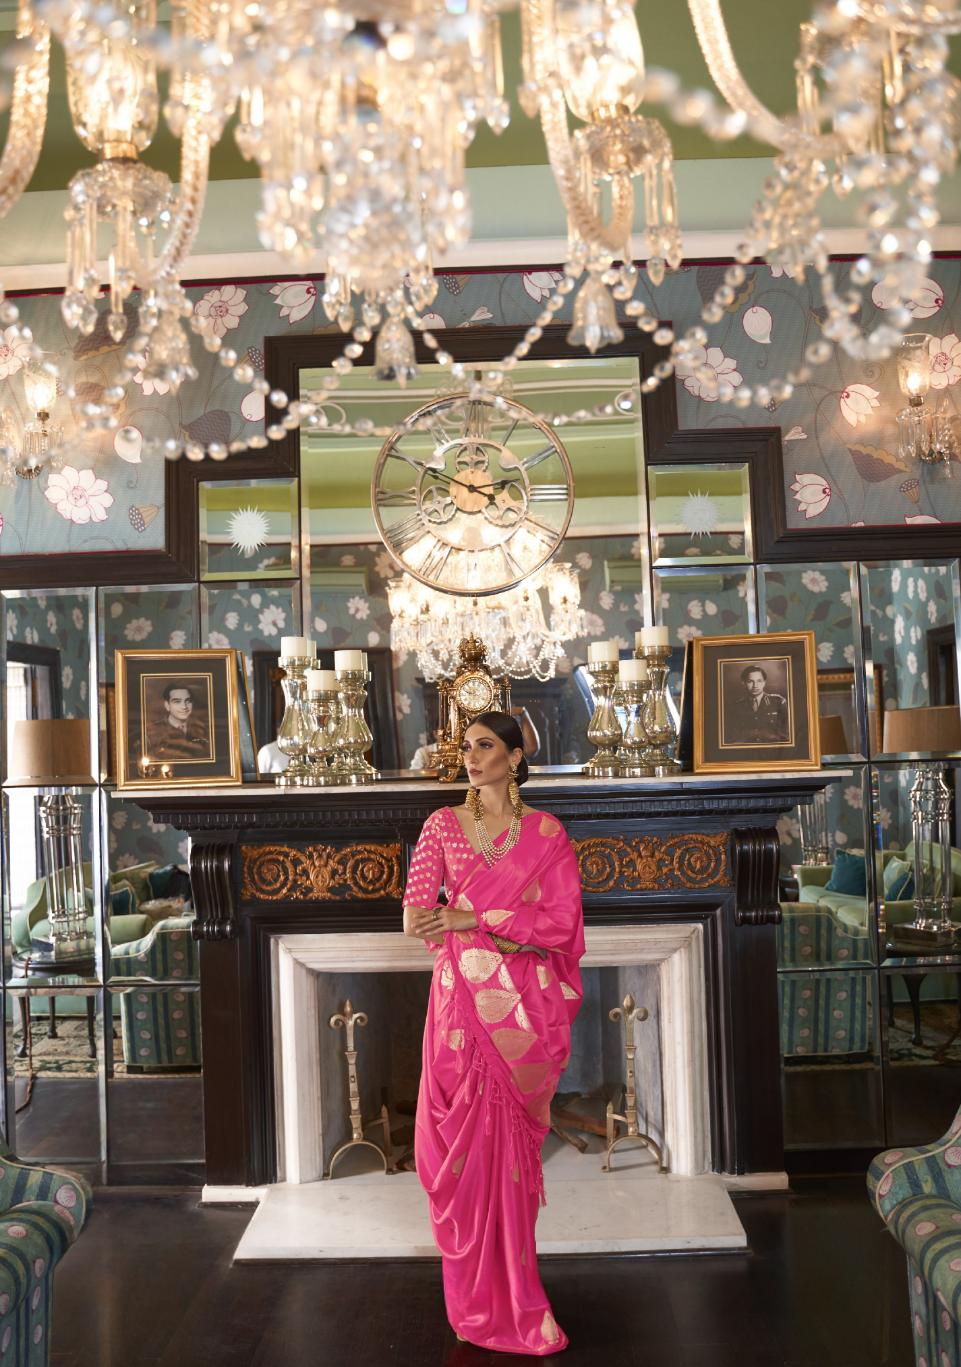 Bright Pink Zari Spades Satin Silk Saree